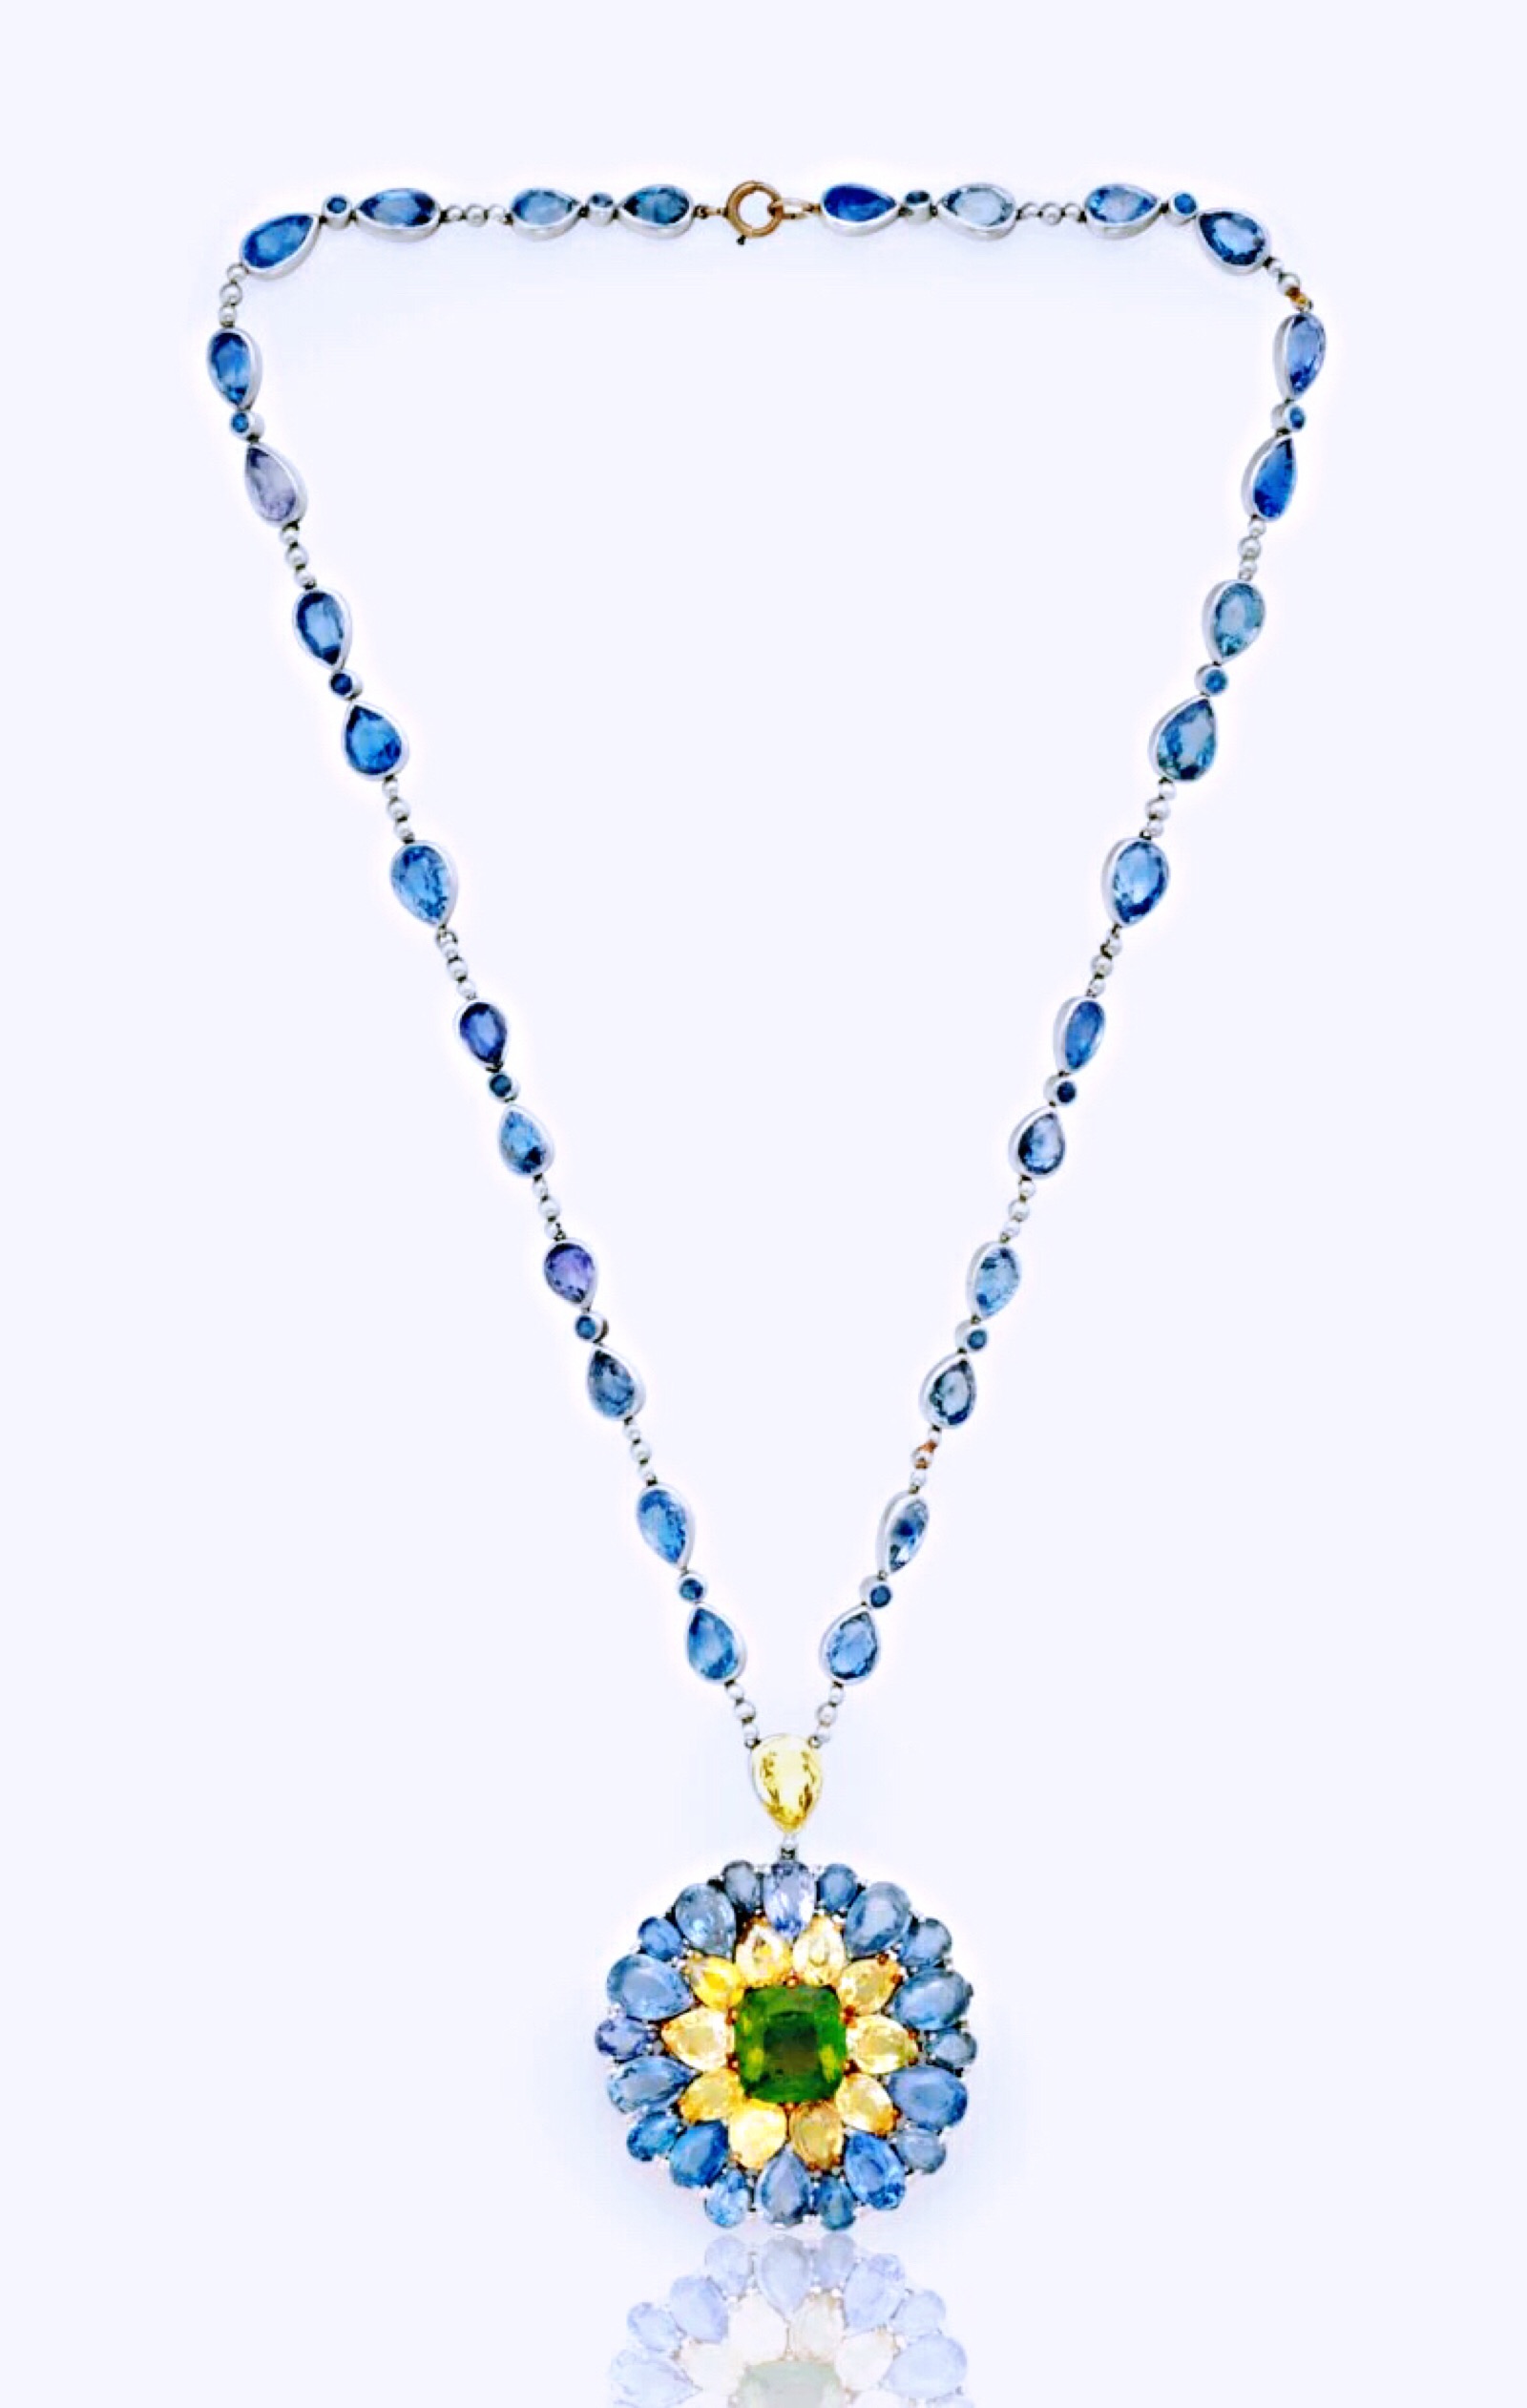 tiffany蓝宝石项链图片